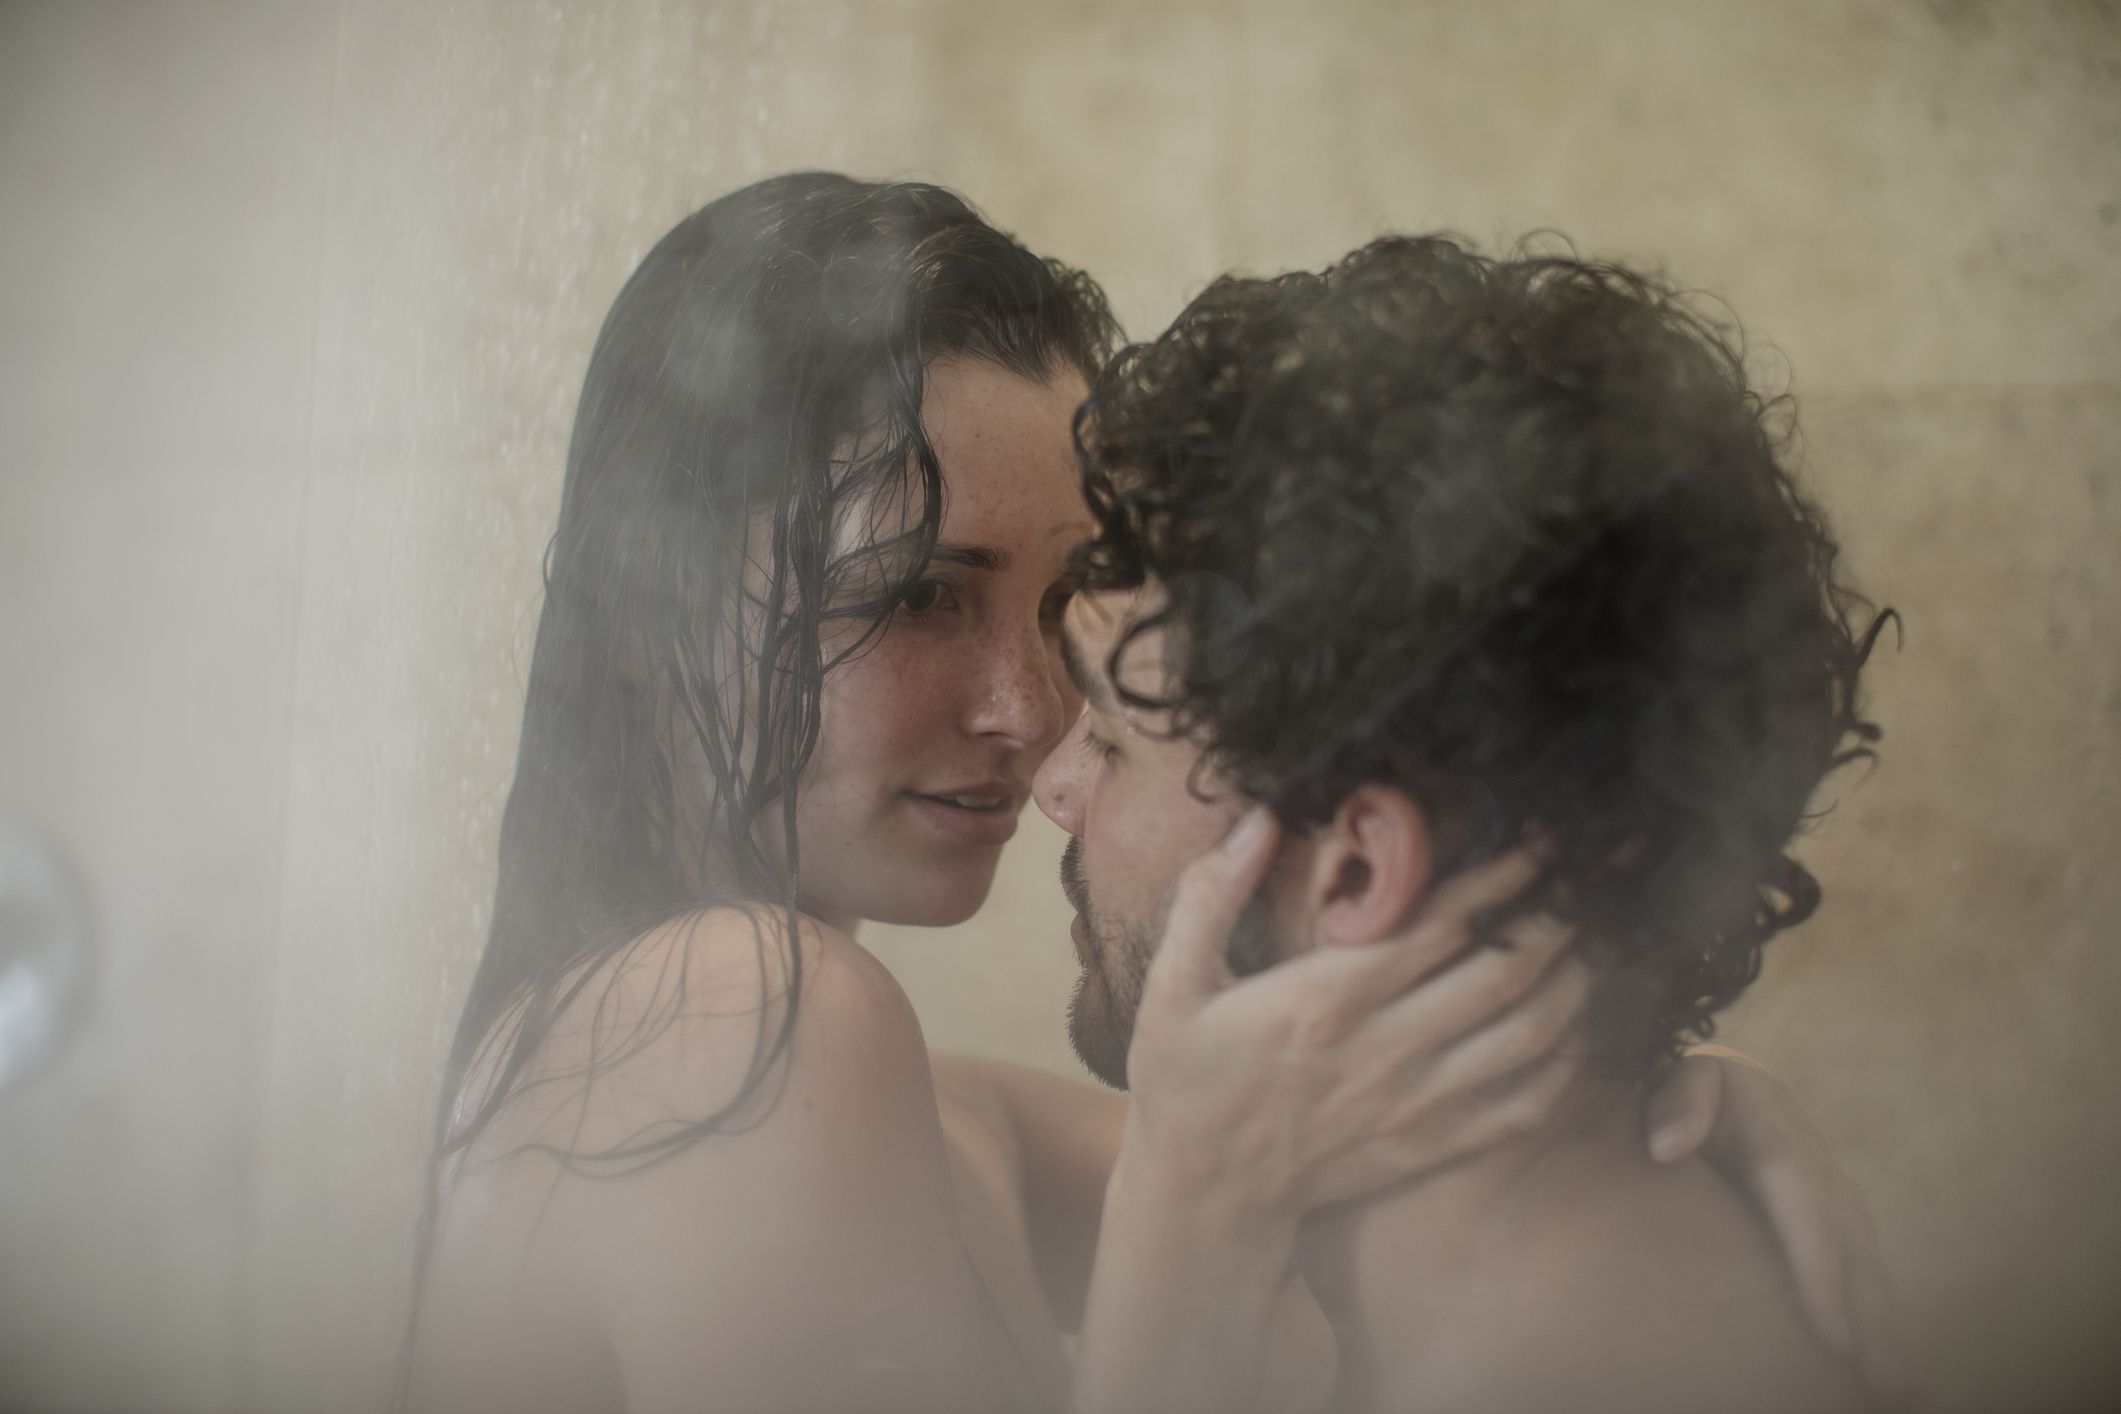 Una ducha completa es mejor que el sexo, según los influencers de TikTok imagen imagen